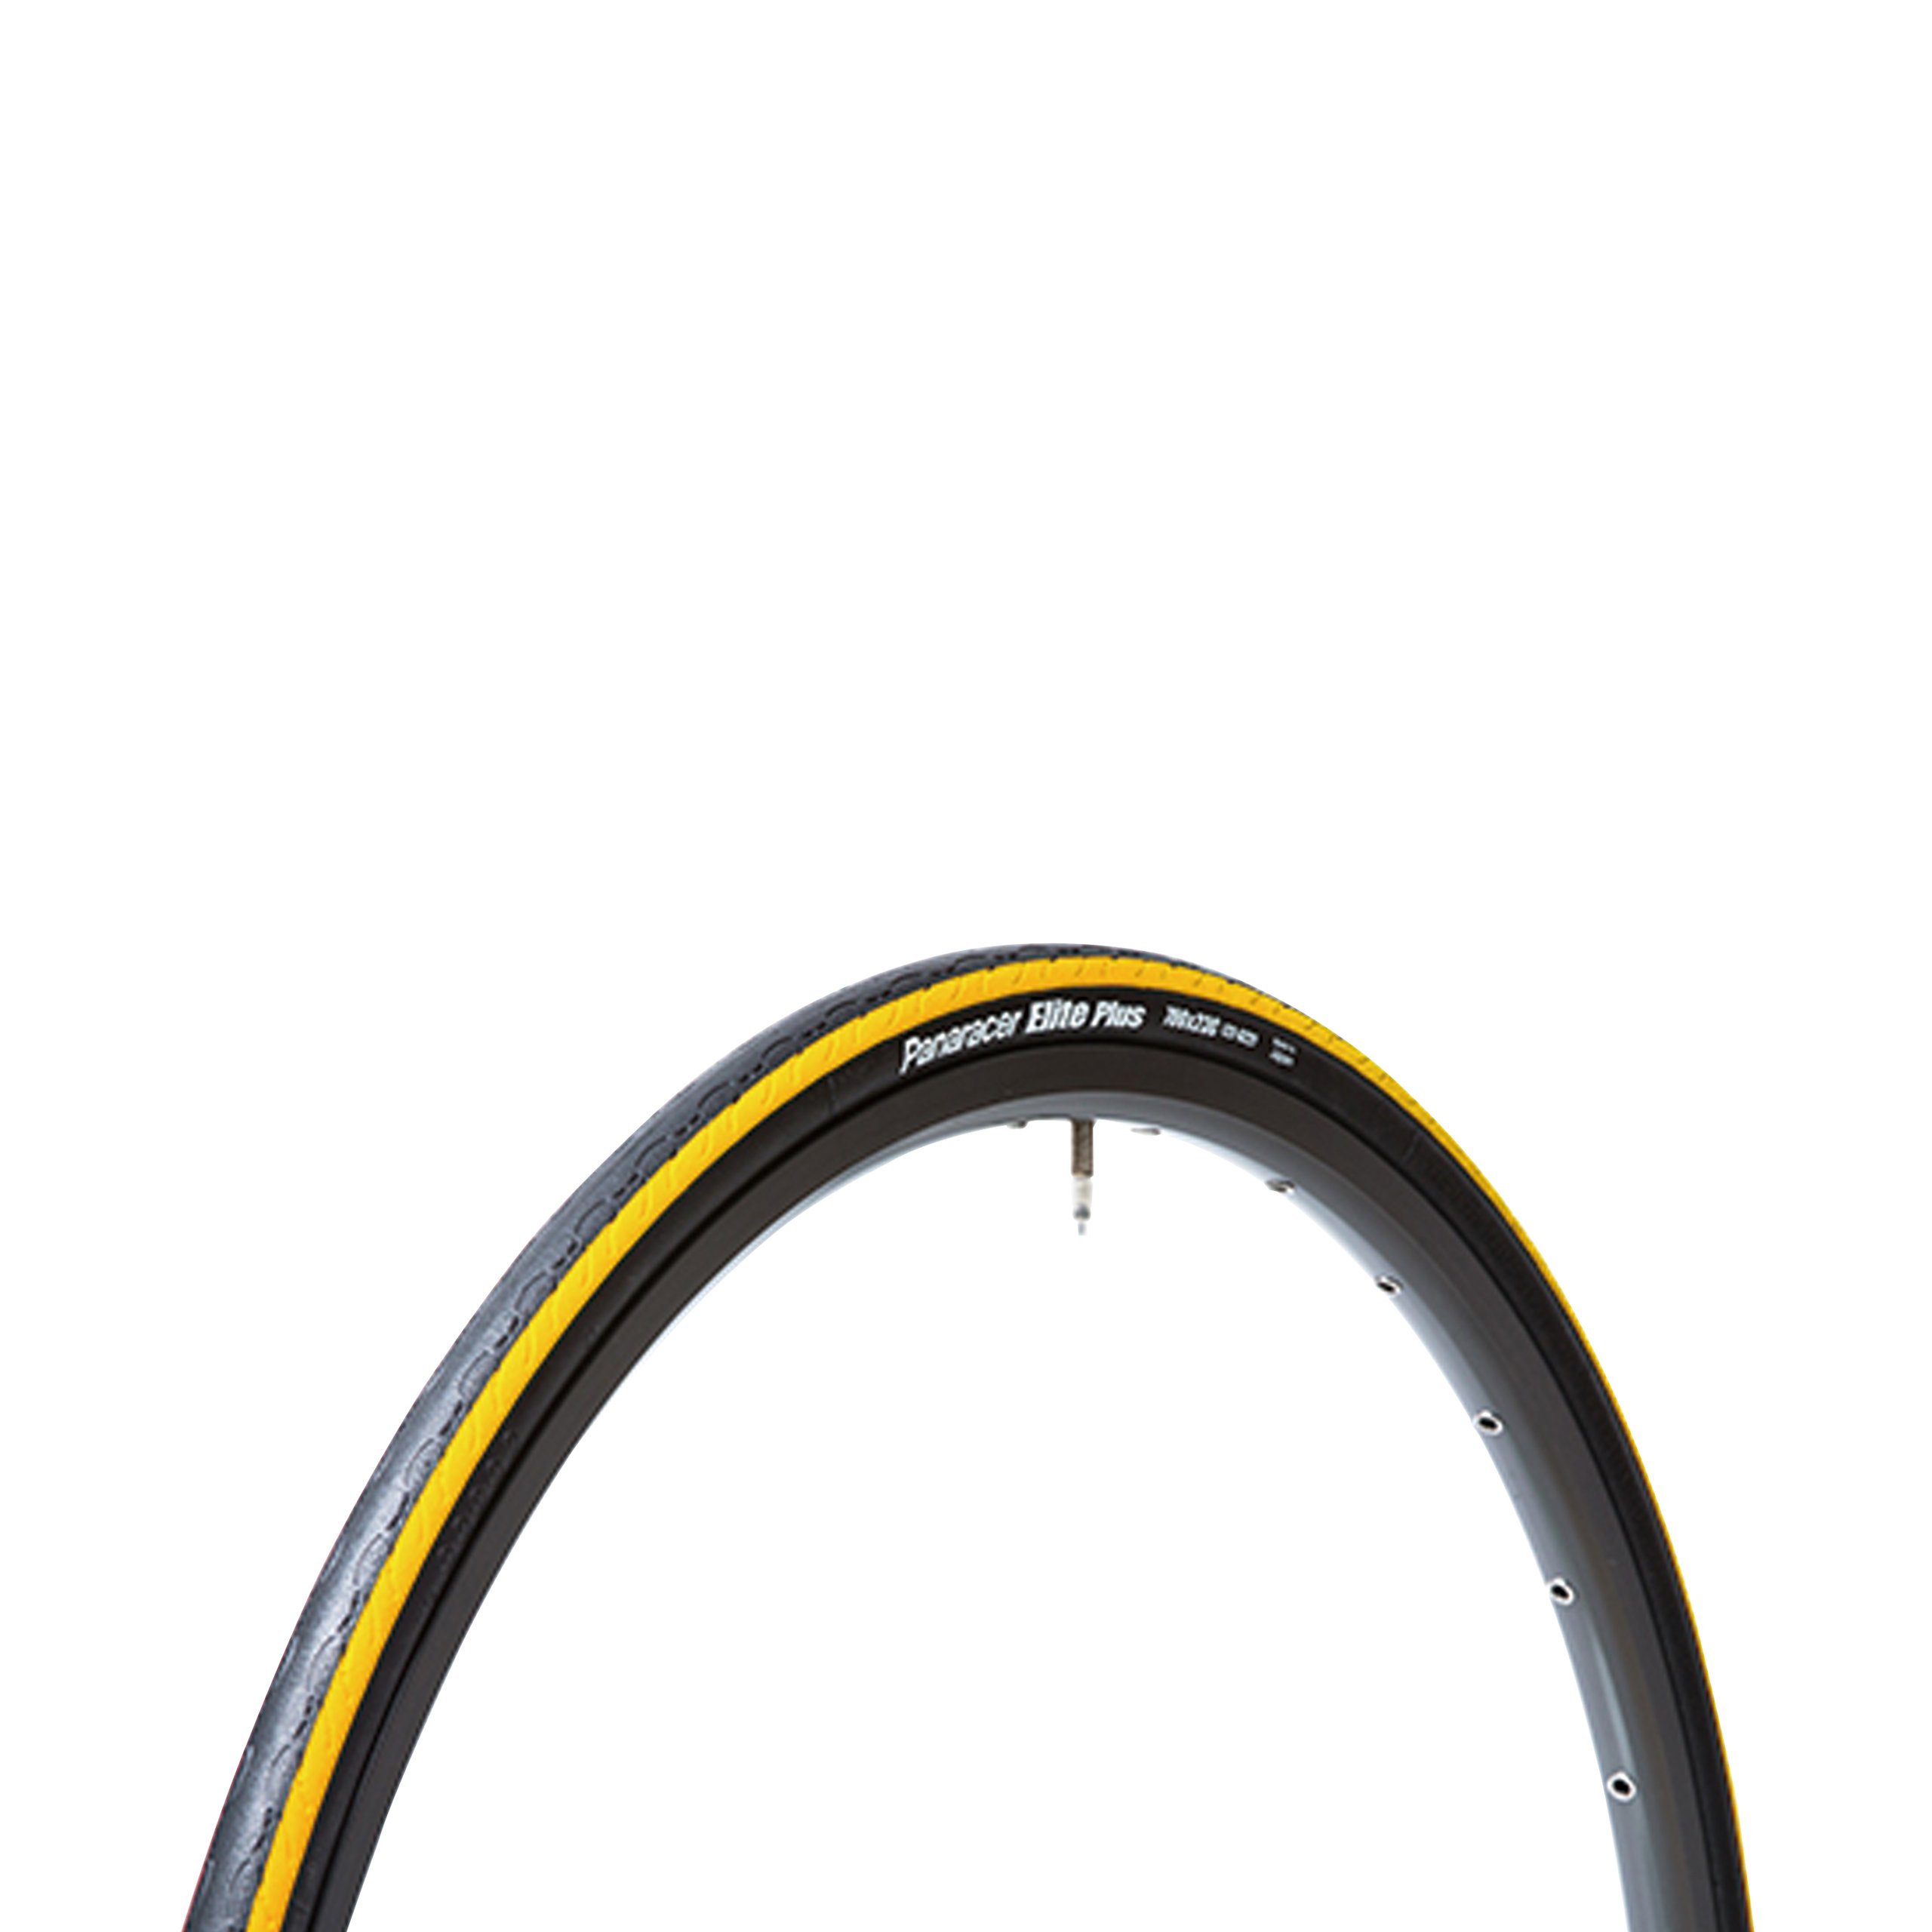 パナレーサー(Panaracer) クリンチャー タイヤ [700×23C] エリートプラス F723-ELTP-Y2 ブラック/黄ライン ( ロードバイク クロスバイク